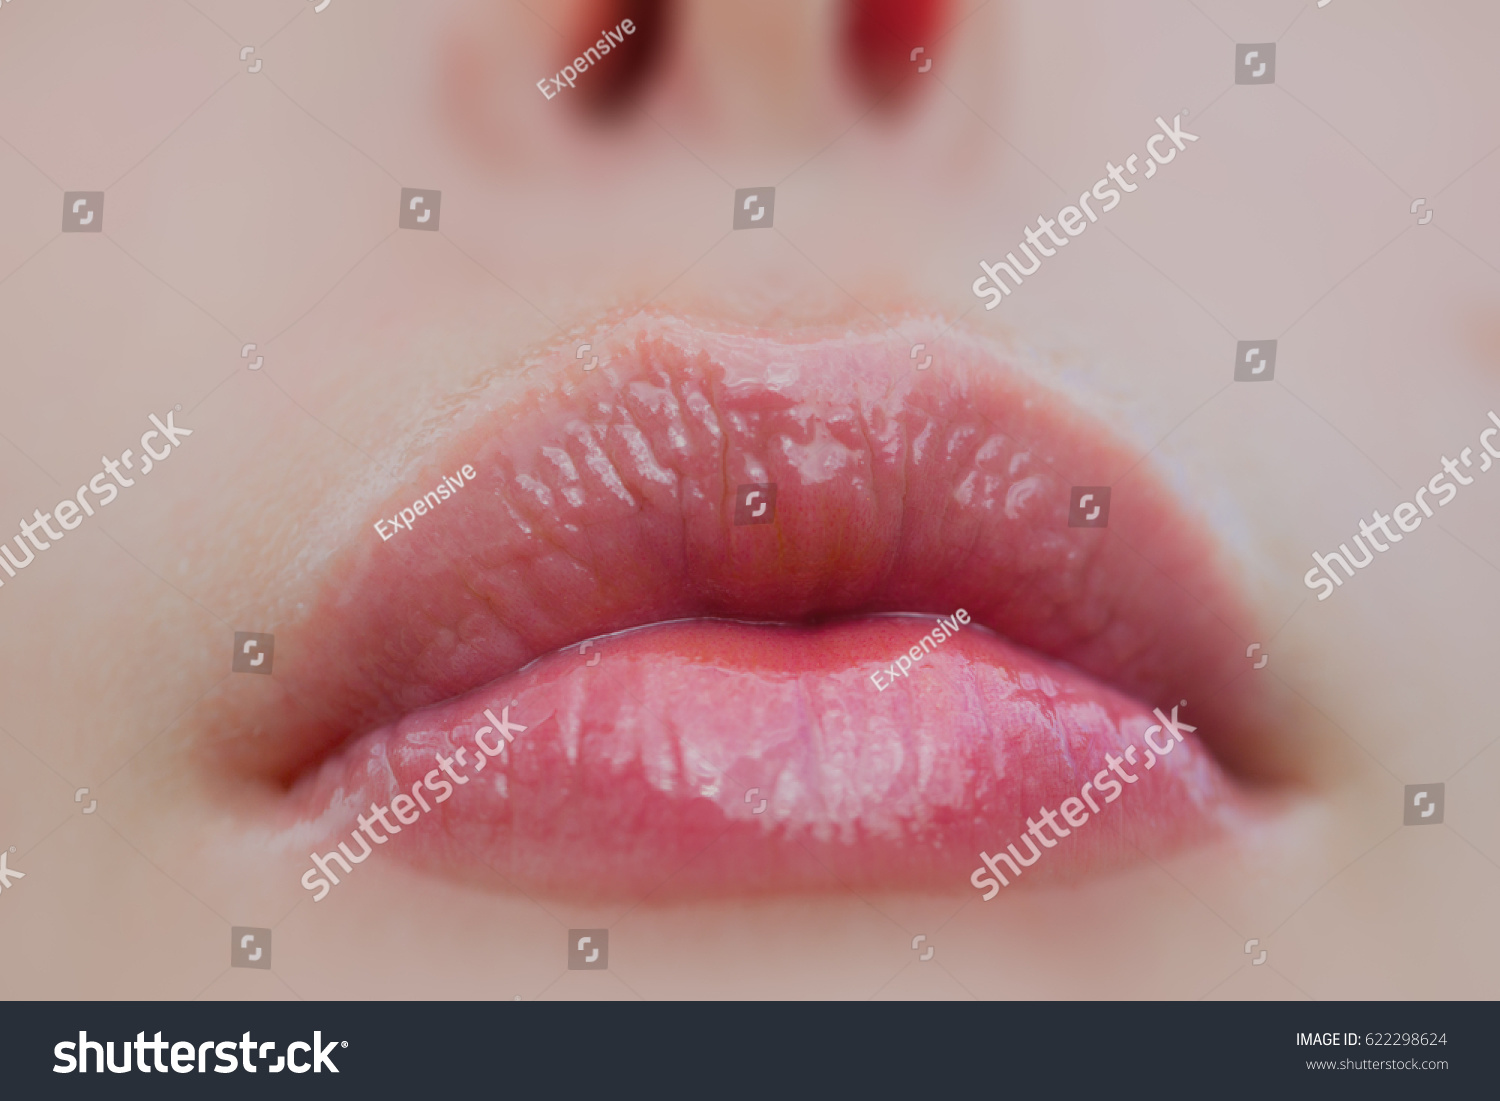 ヘルペスのない健康な女性の唇 リップ バームを持つセクシーな女の子の口 女の顔の一部 美しい若い女性の口と鼻 光沢のあるナチュラルな口紅 化粧品 化粧品 化粧 の写真素材 今すぐ編集